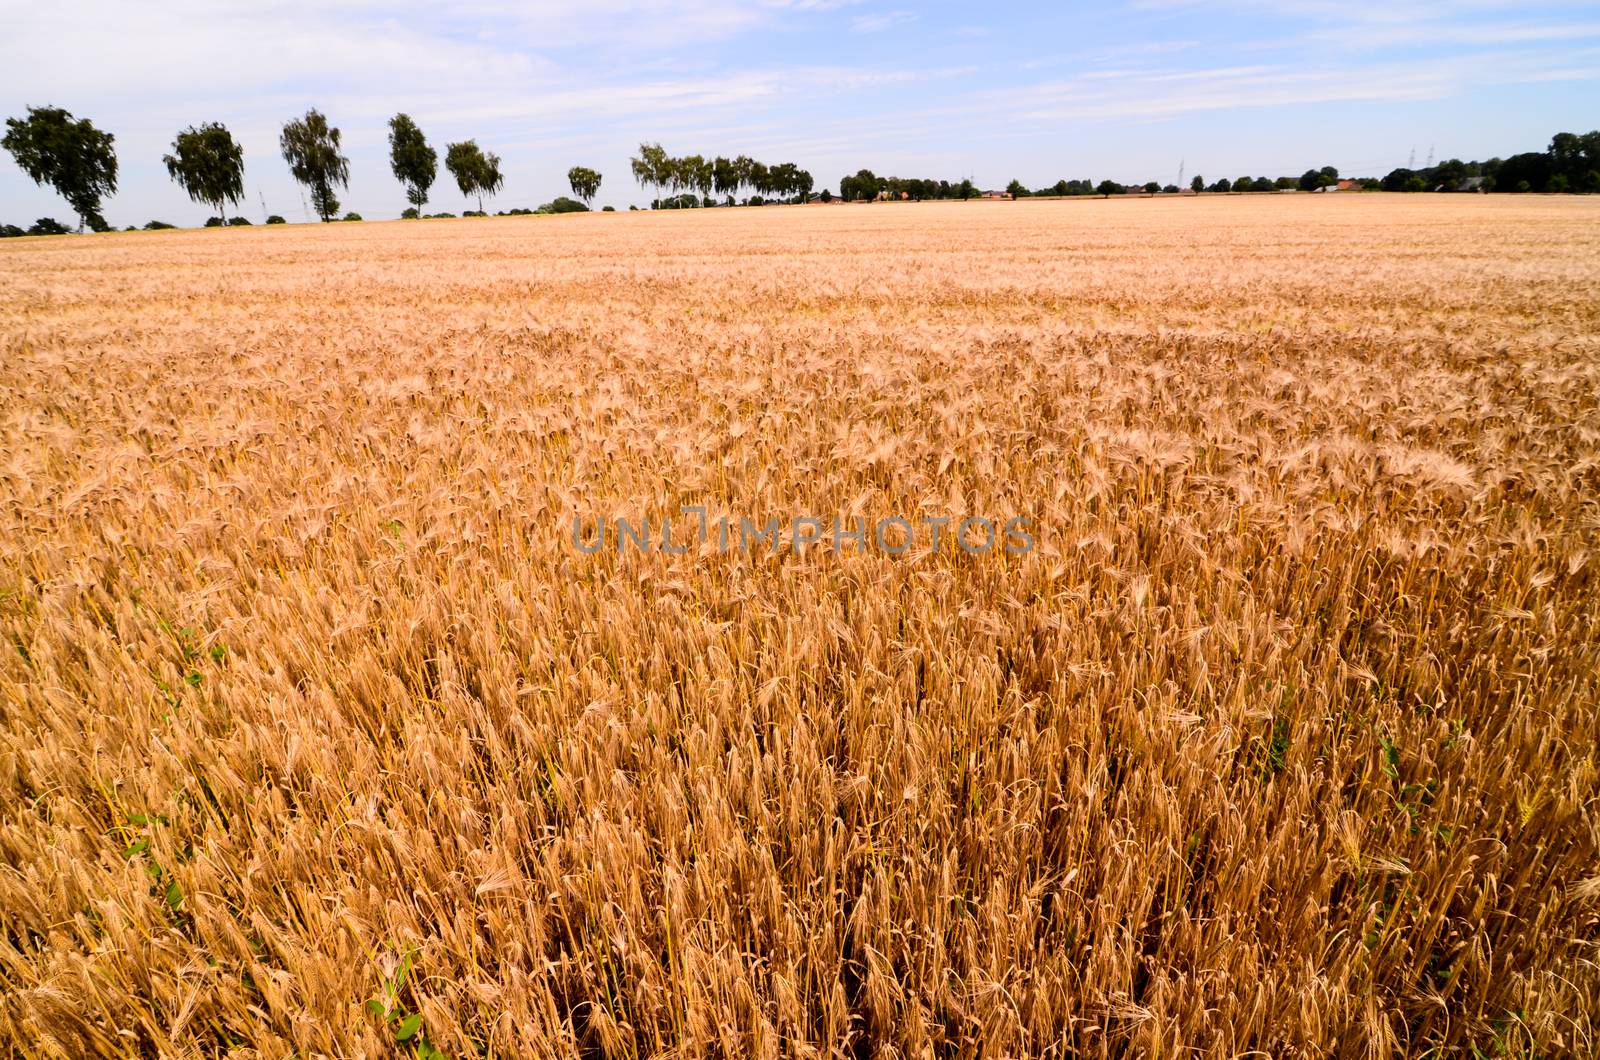 Textured Wheat Field by underworld